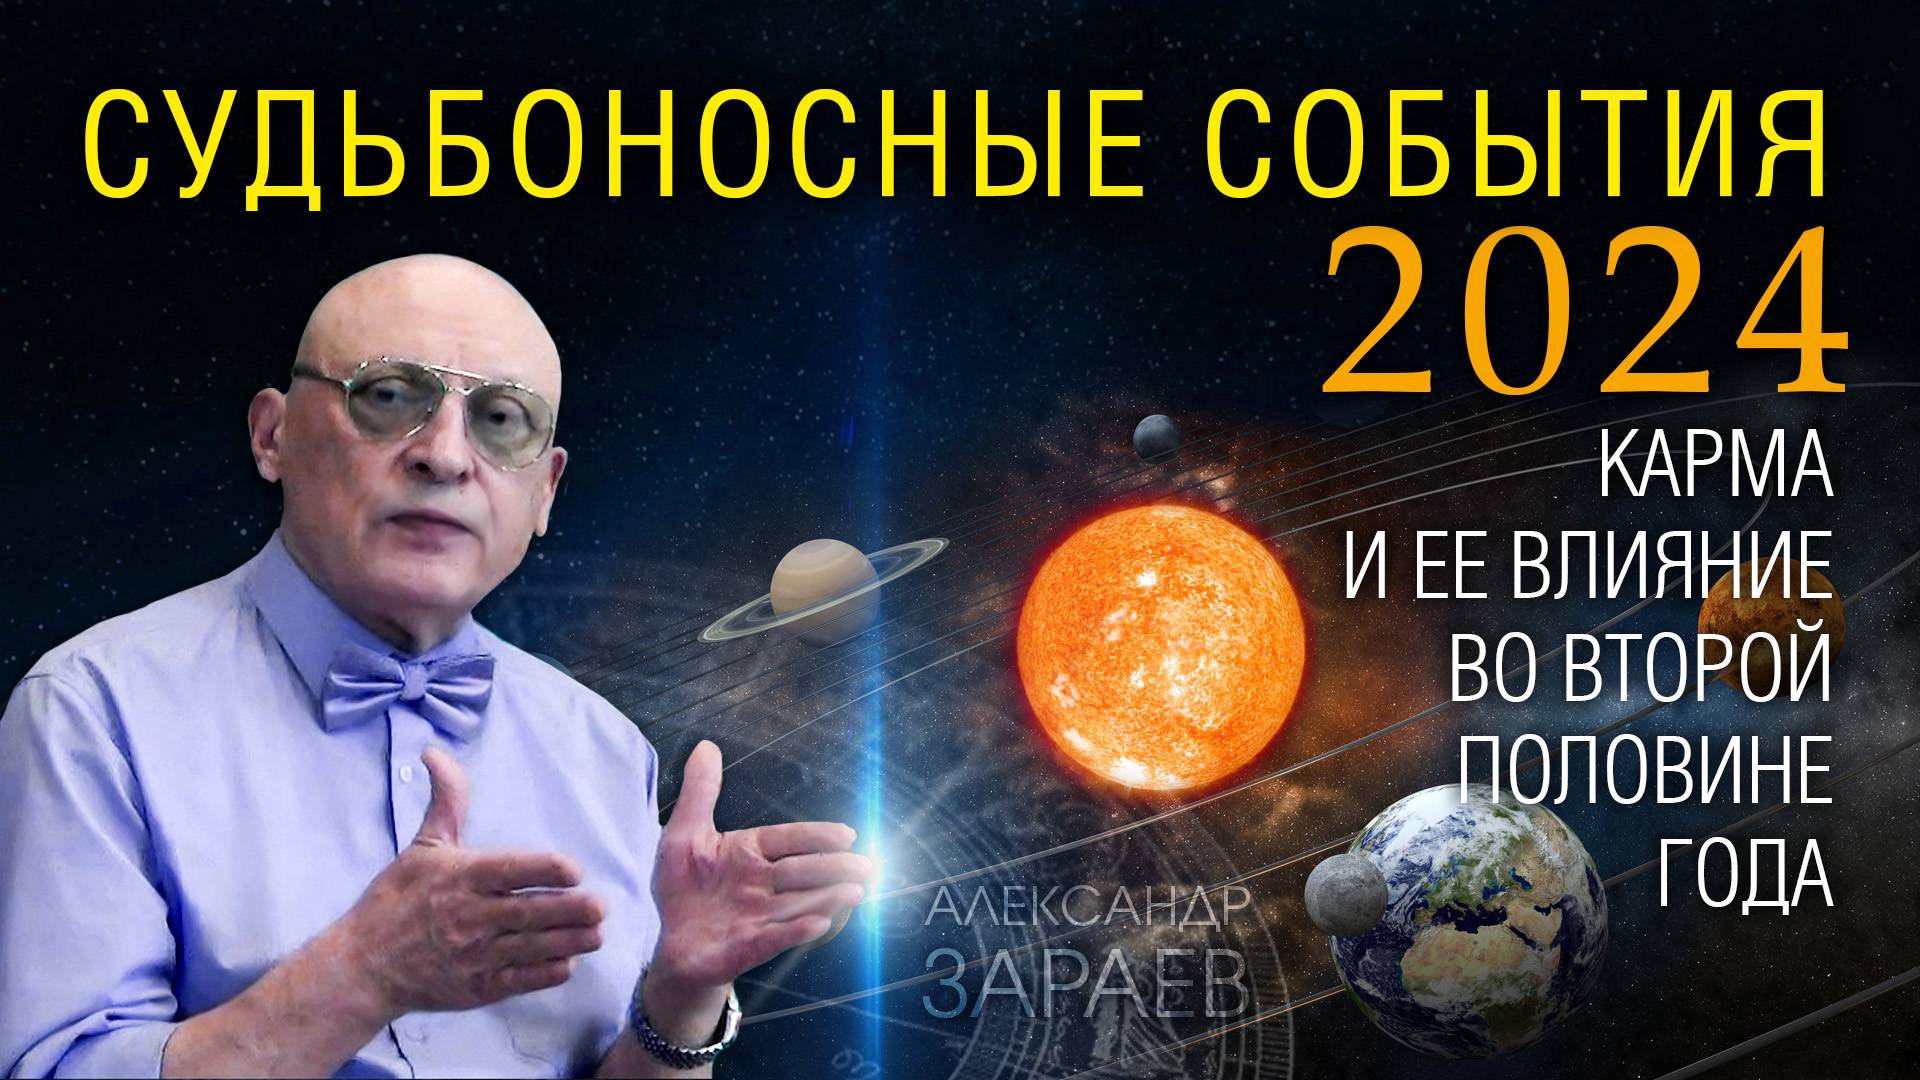 СУДЬБОНОСНЫЕ СОБЫТИЯ 2024 ГОДА - Карма и ее влияние во второй половине года • Александр Зараев